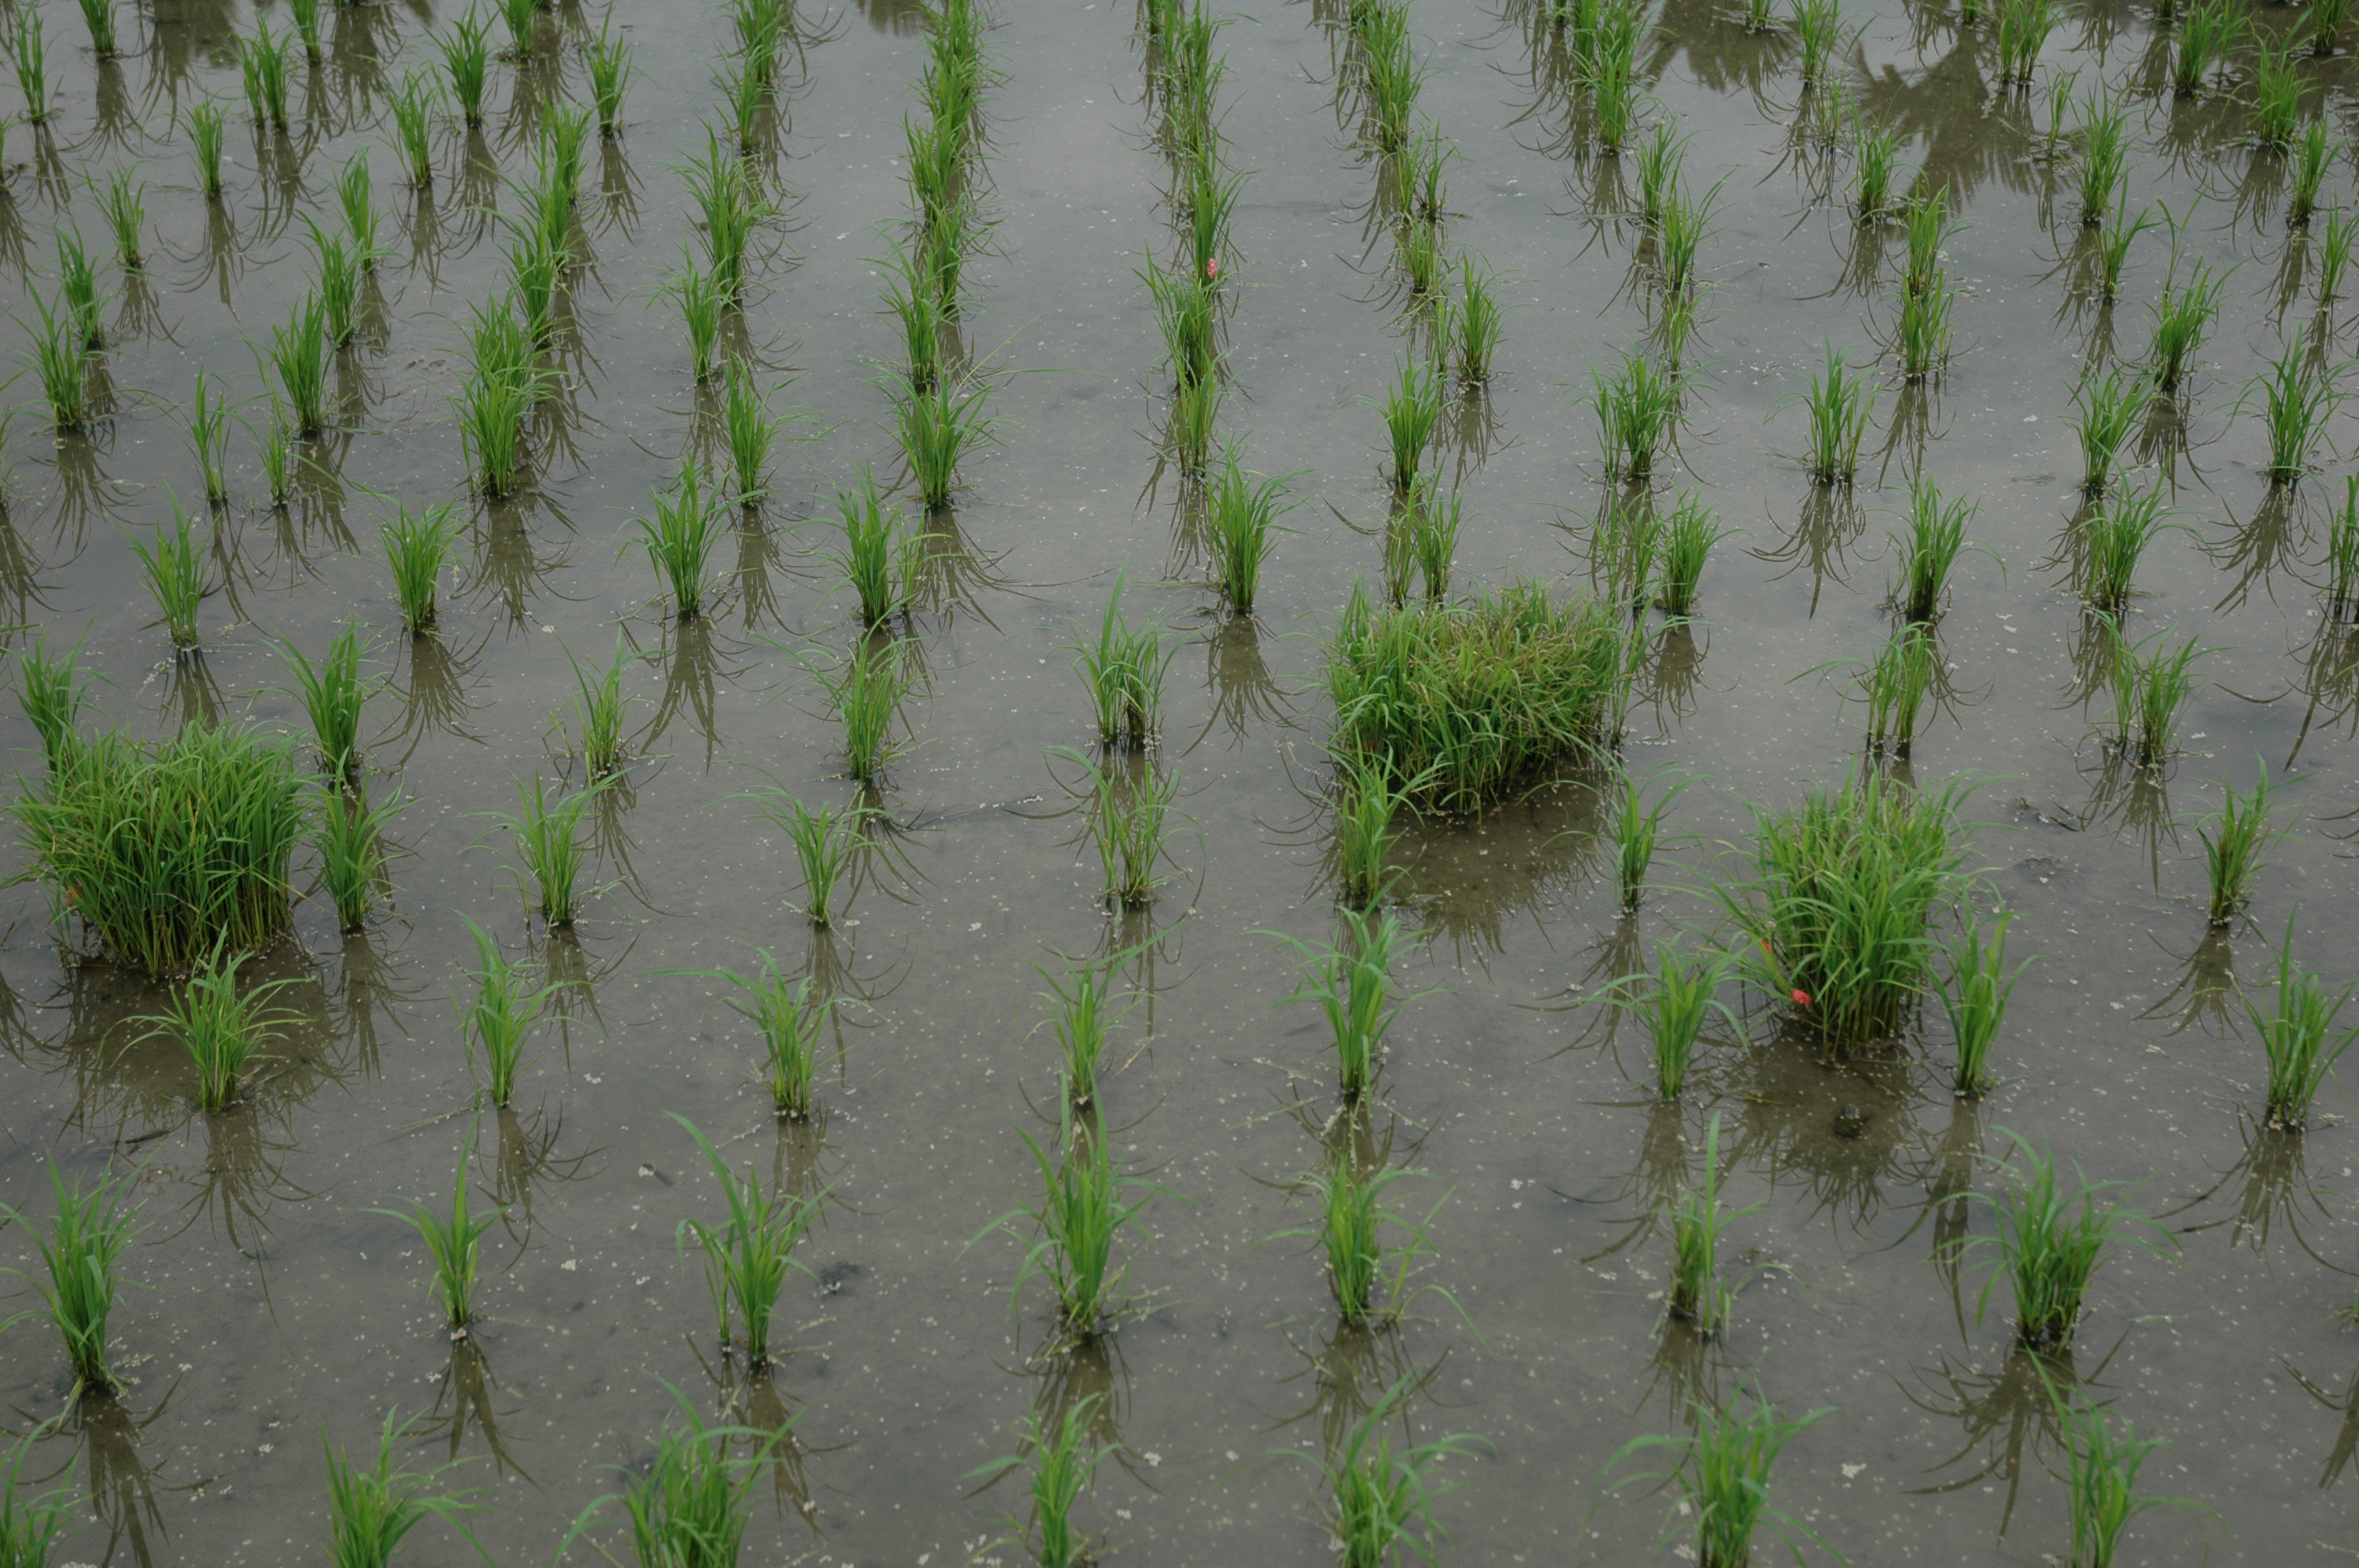 秧砧作為水稻葉稻熱病監測的工具